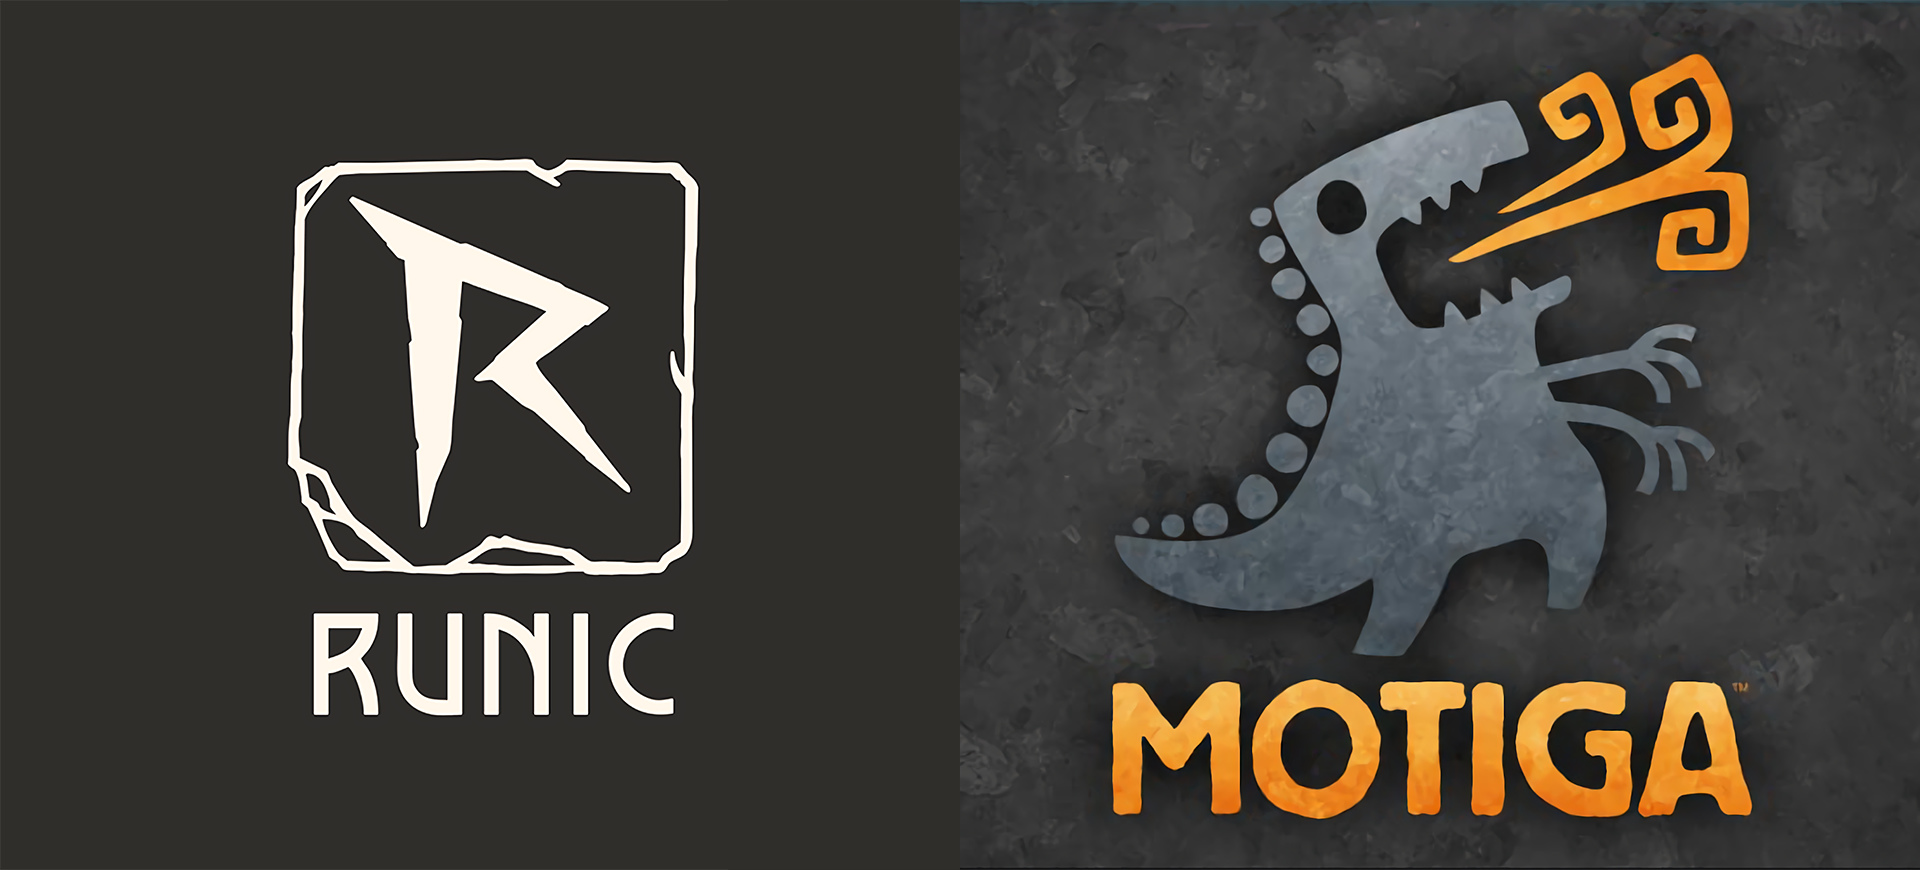 Perfect World Entertainment cho đóng cửa Runic Games và cắt giảm nhân sự tại Motiga - Tin Game